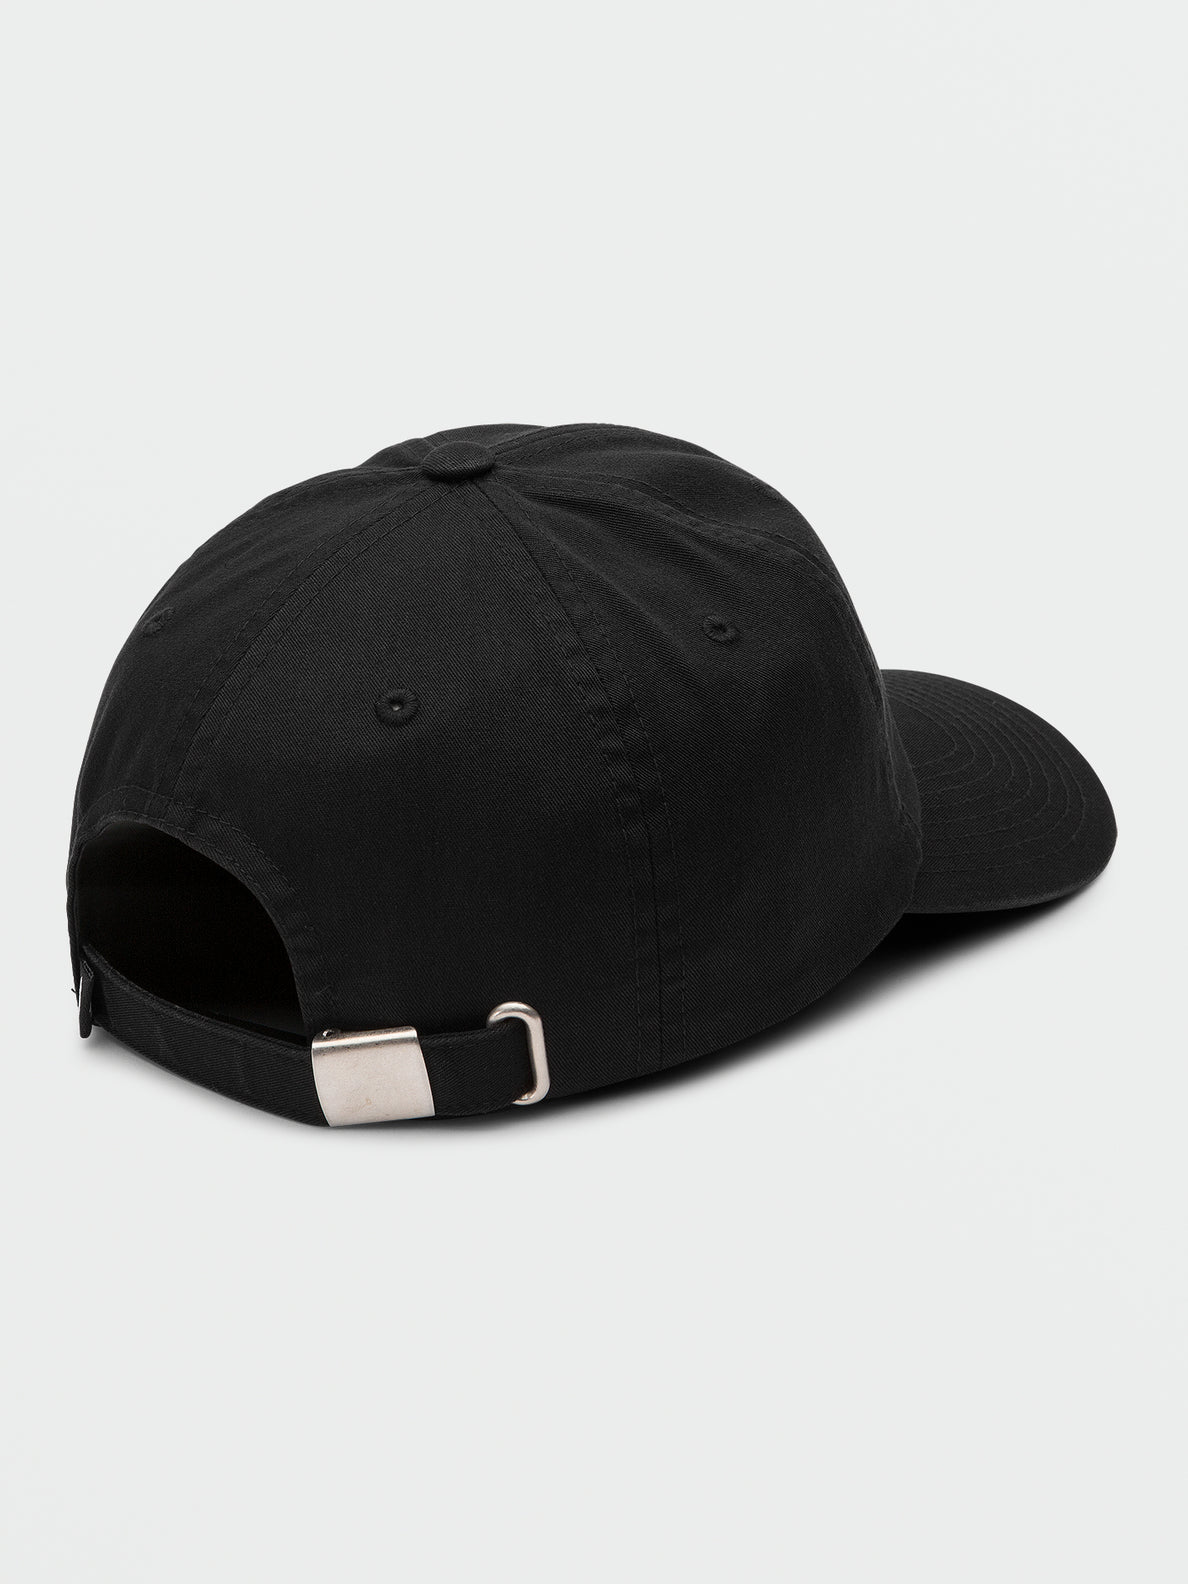 Volcom Dial Up Hat Black | surfdevils.com